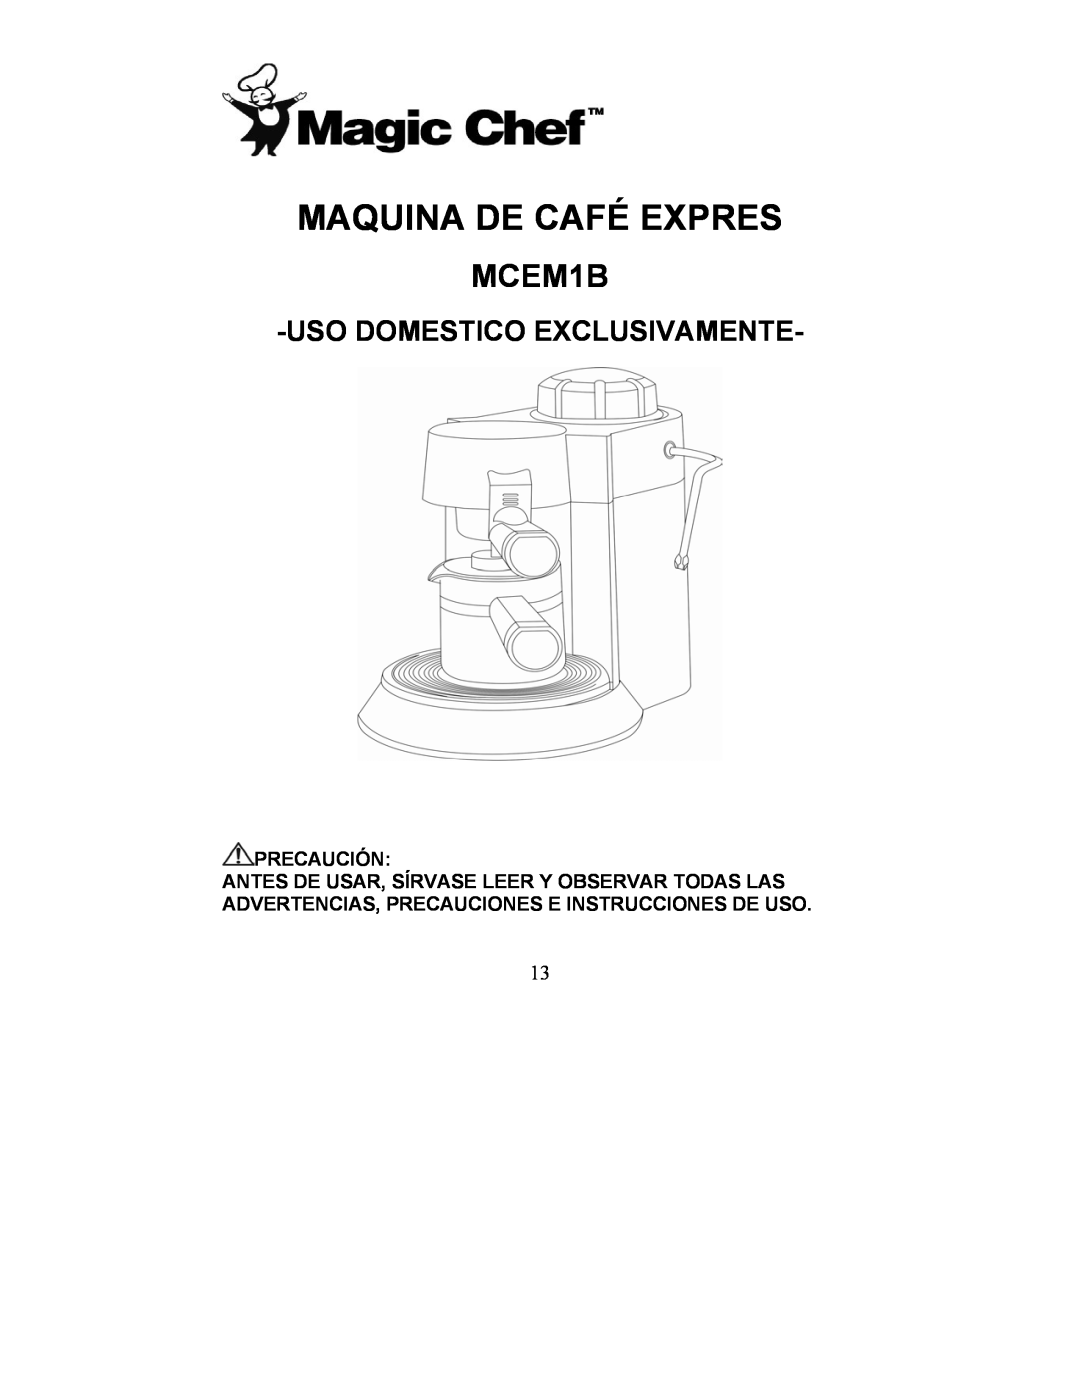 Maytag MCEM1B manual Maquina De Café Expres, Usodomestico Exclusivamente 